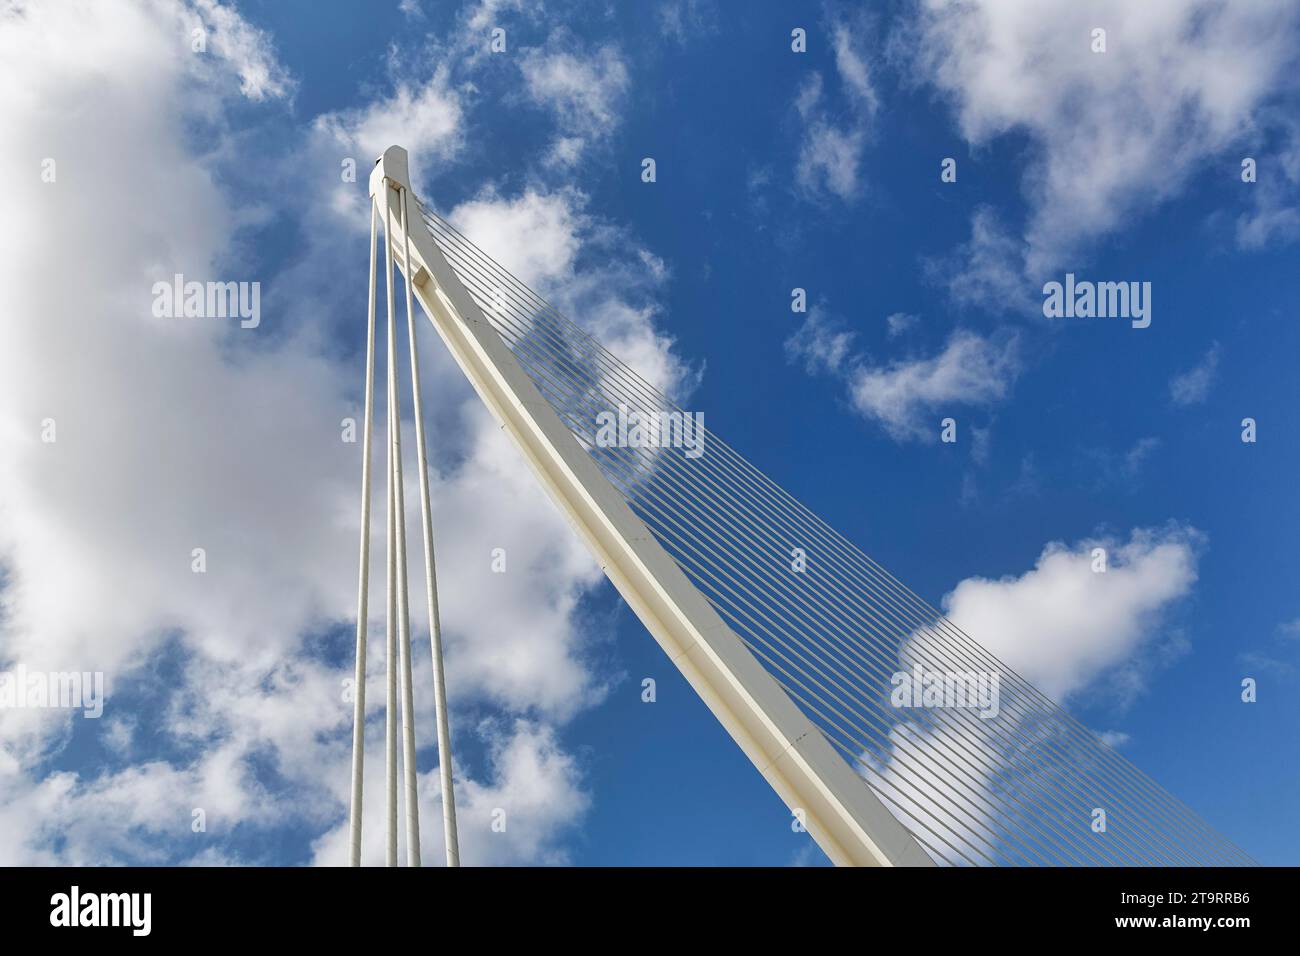 White cable-stayed bridge in the shape of a harp, Pont de L'Assut de l'Or, modern architecture, architect Santiago Calatrava, pylon, detail in front Stock Photo